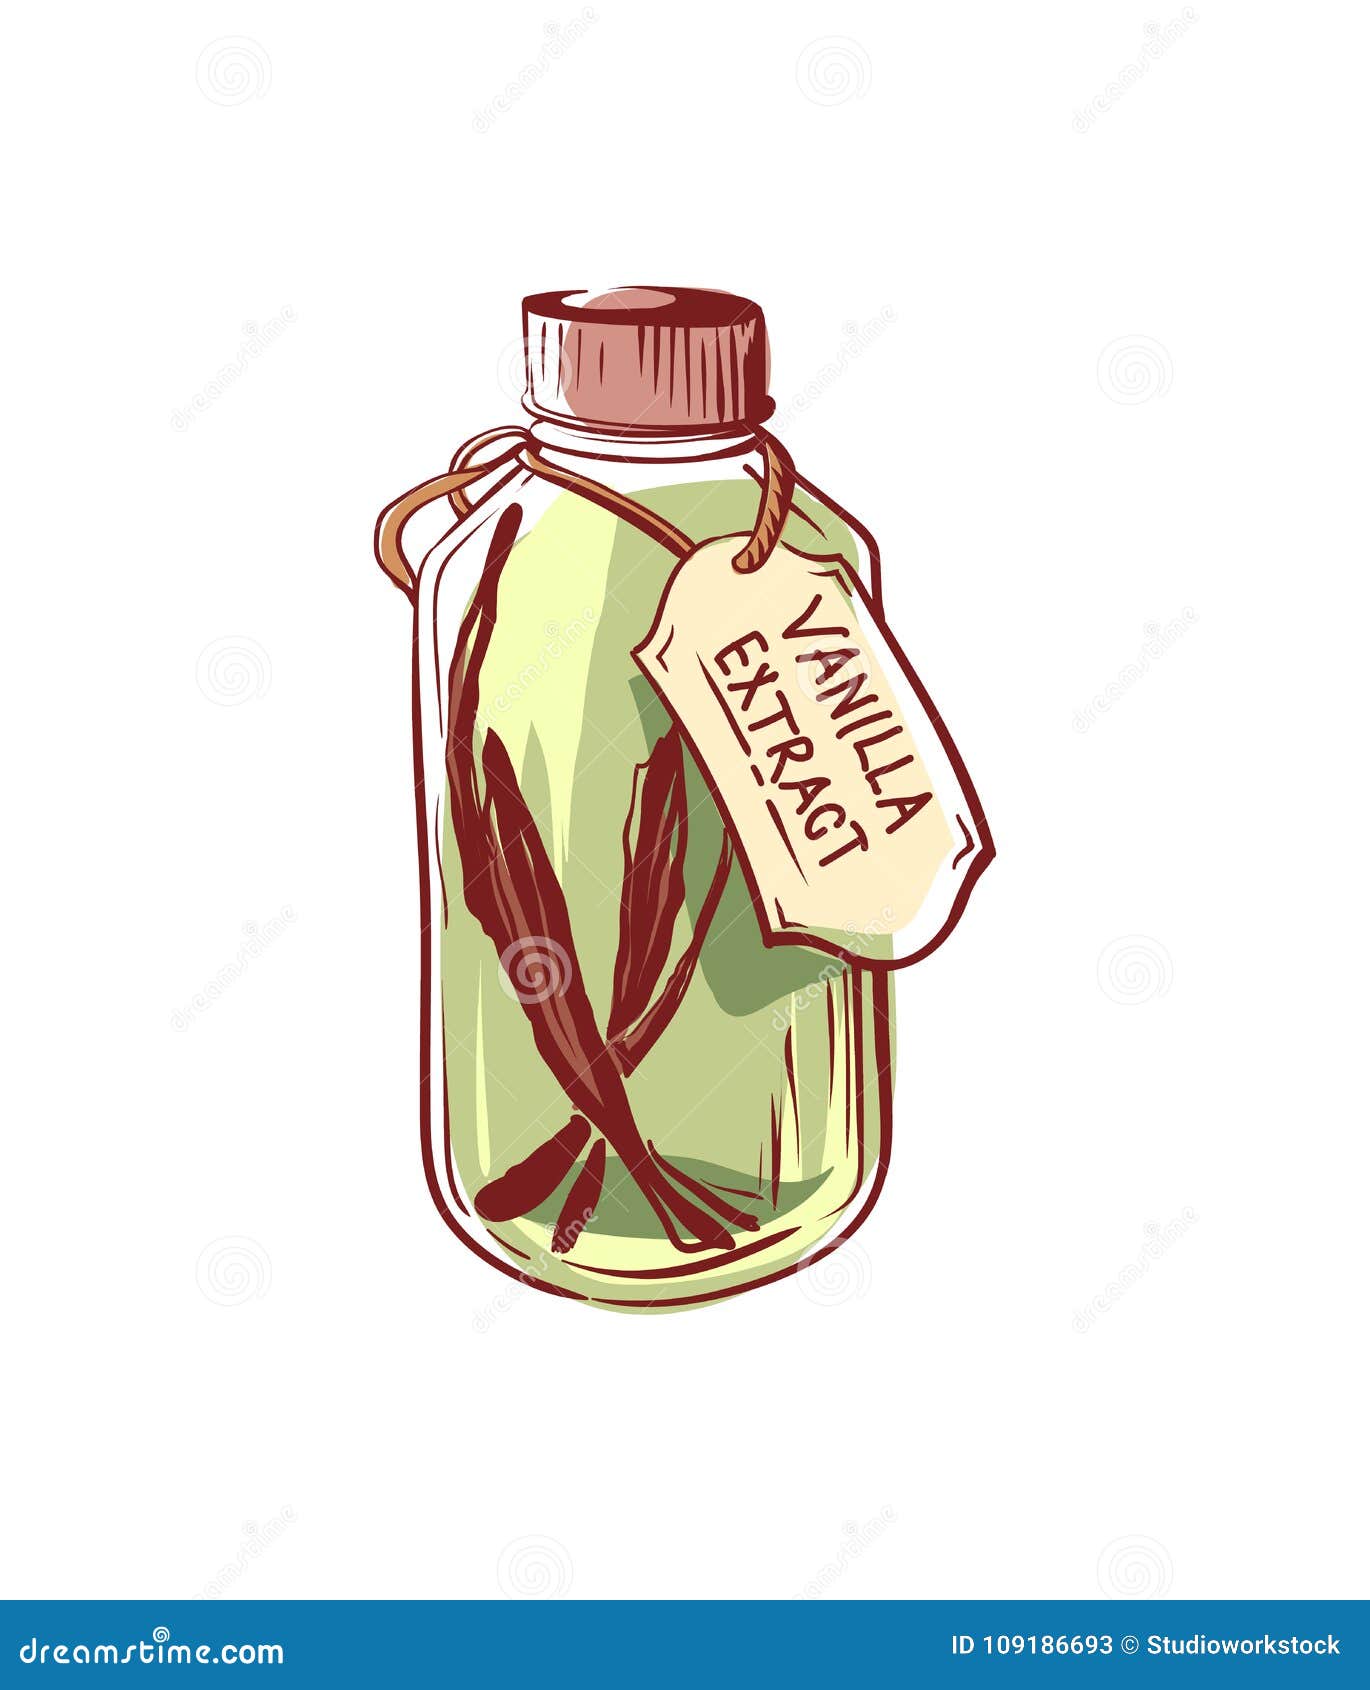 vanilla extract oil bottle   icon